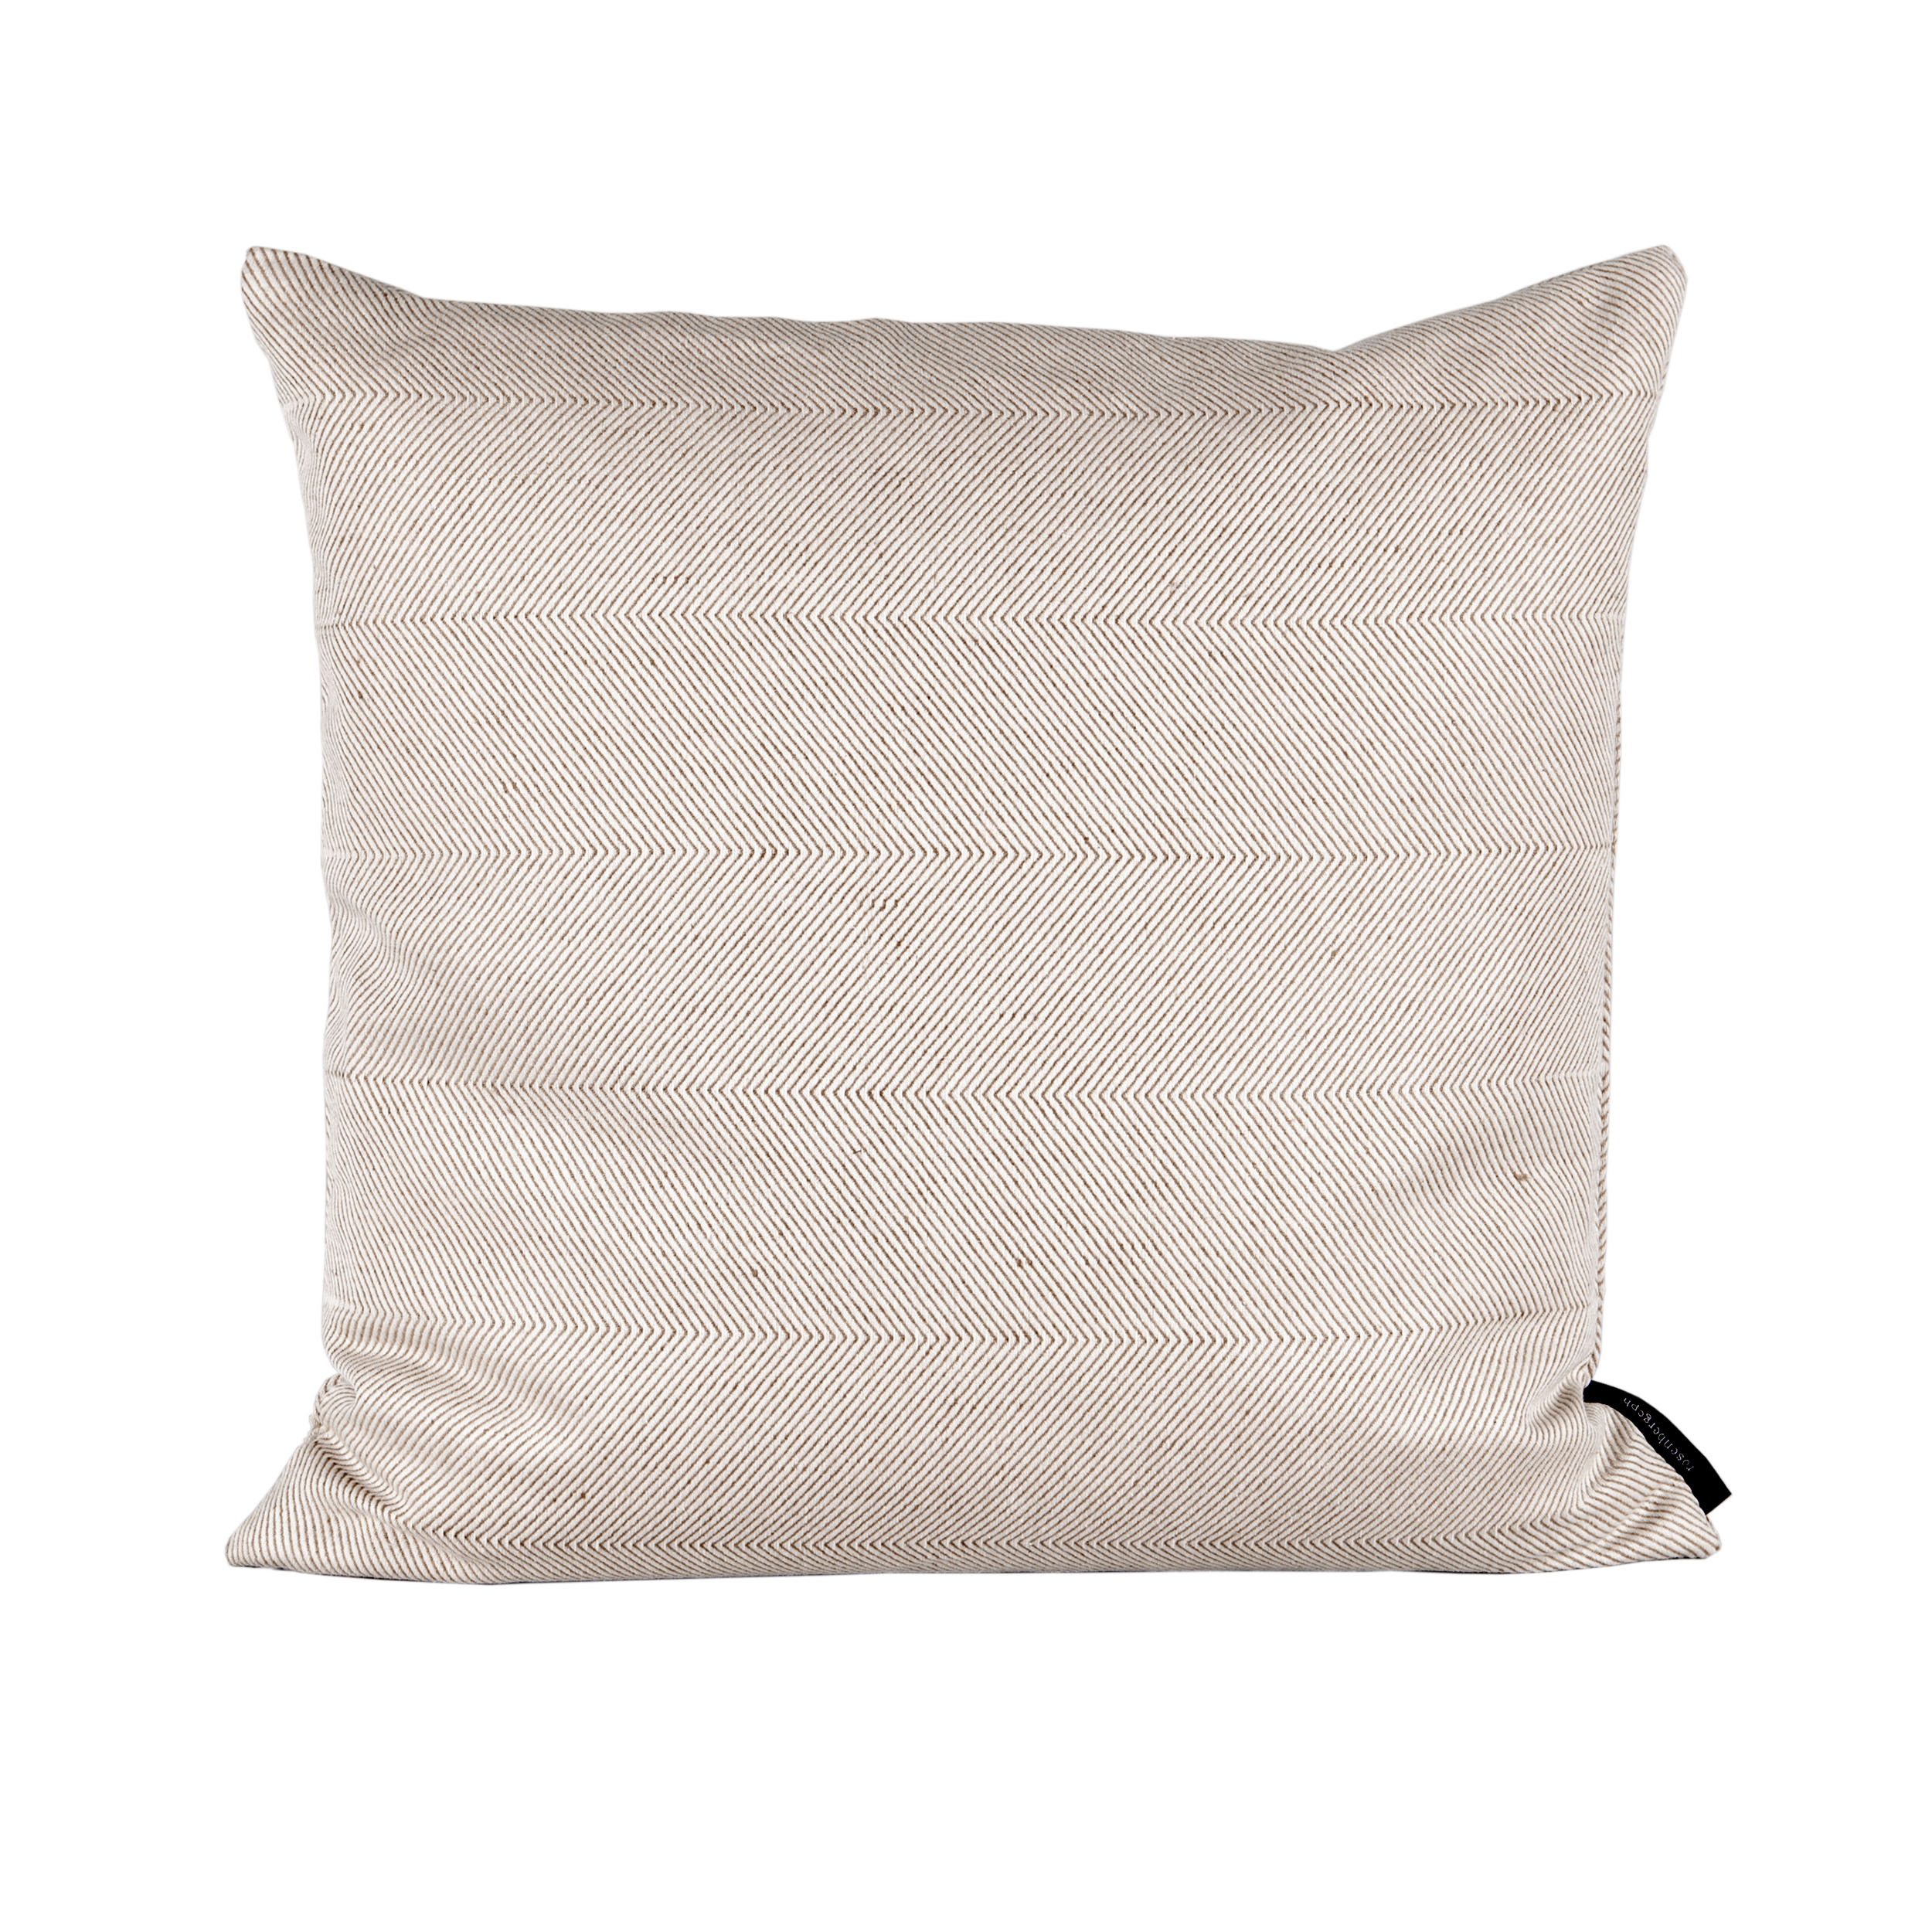 Square cushion linen/cotton Light Almond, design by Anne Rosenberg, RosenbergCph